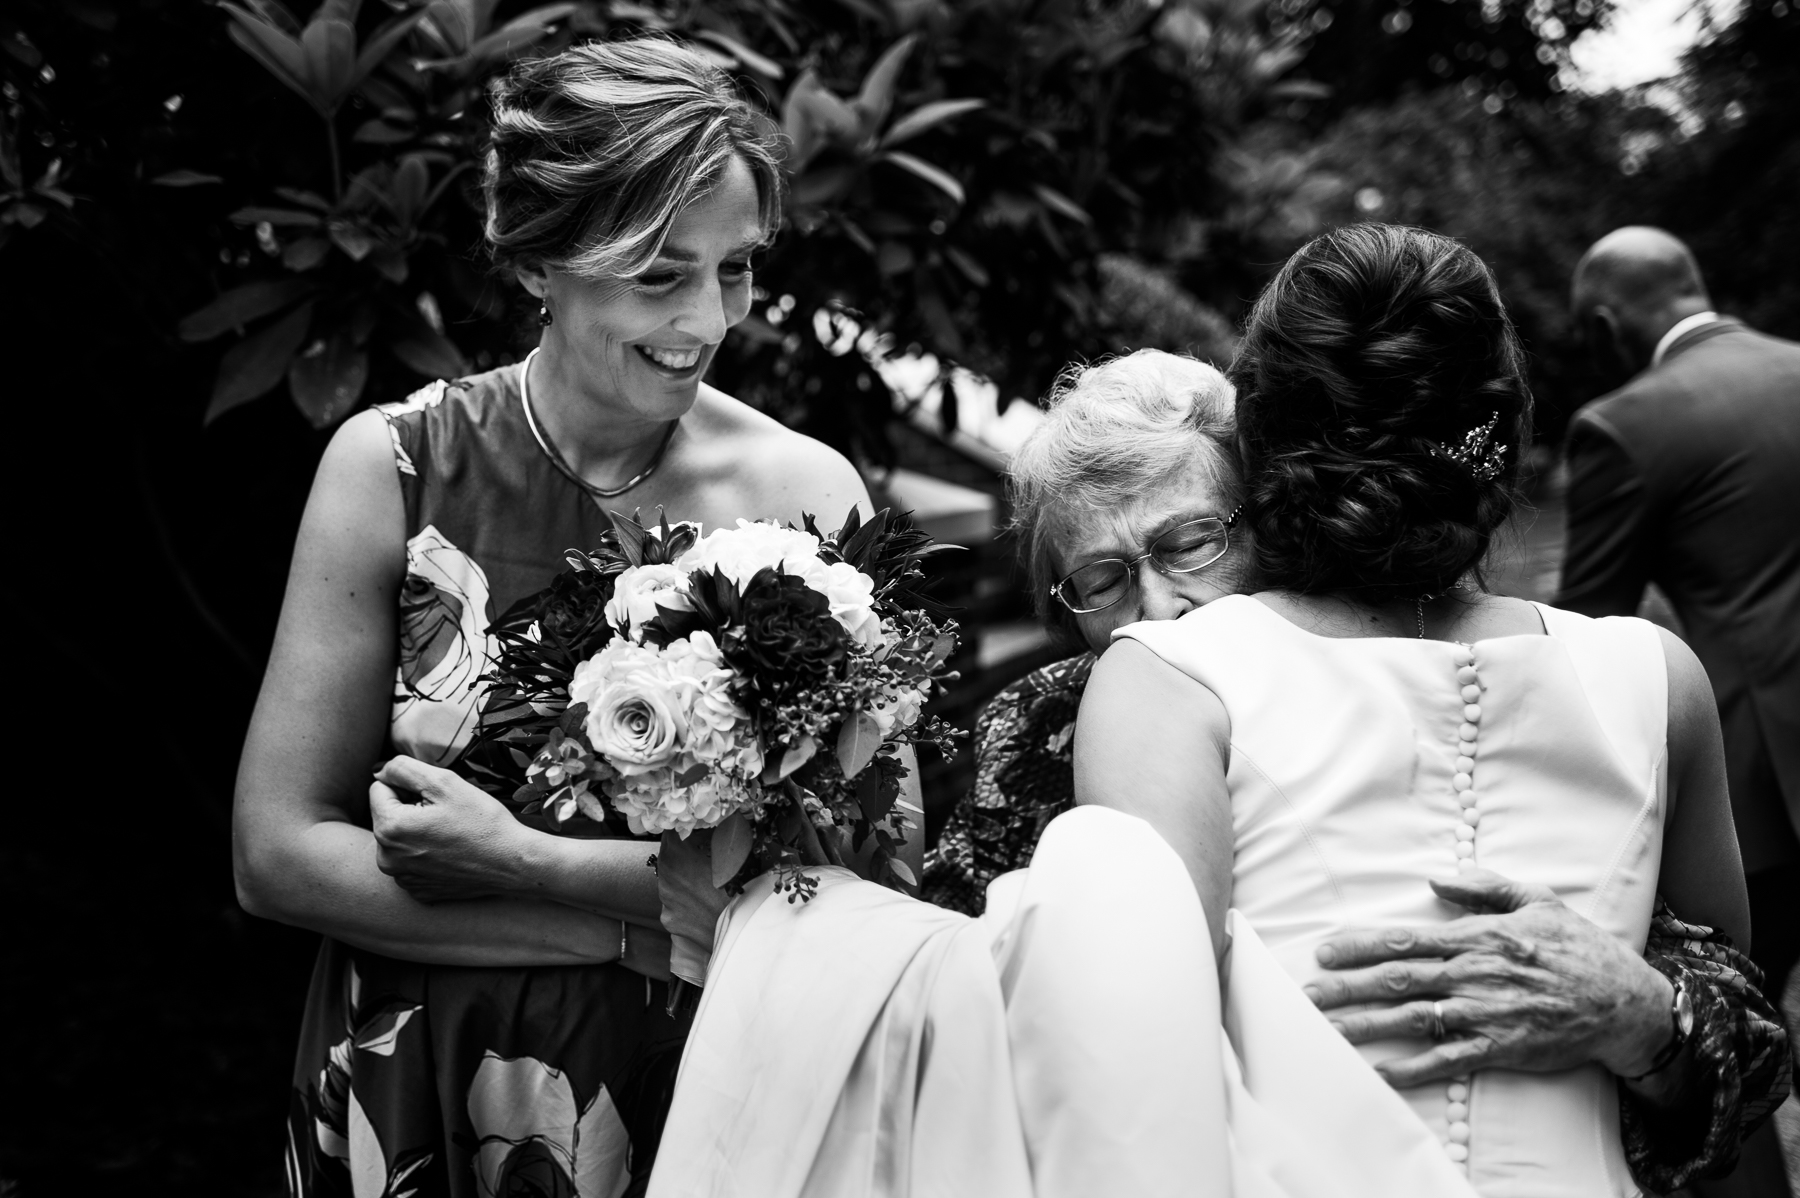 grandma moment with bride